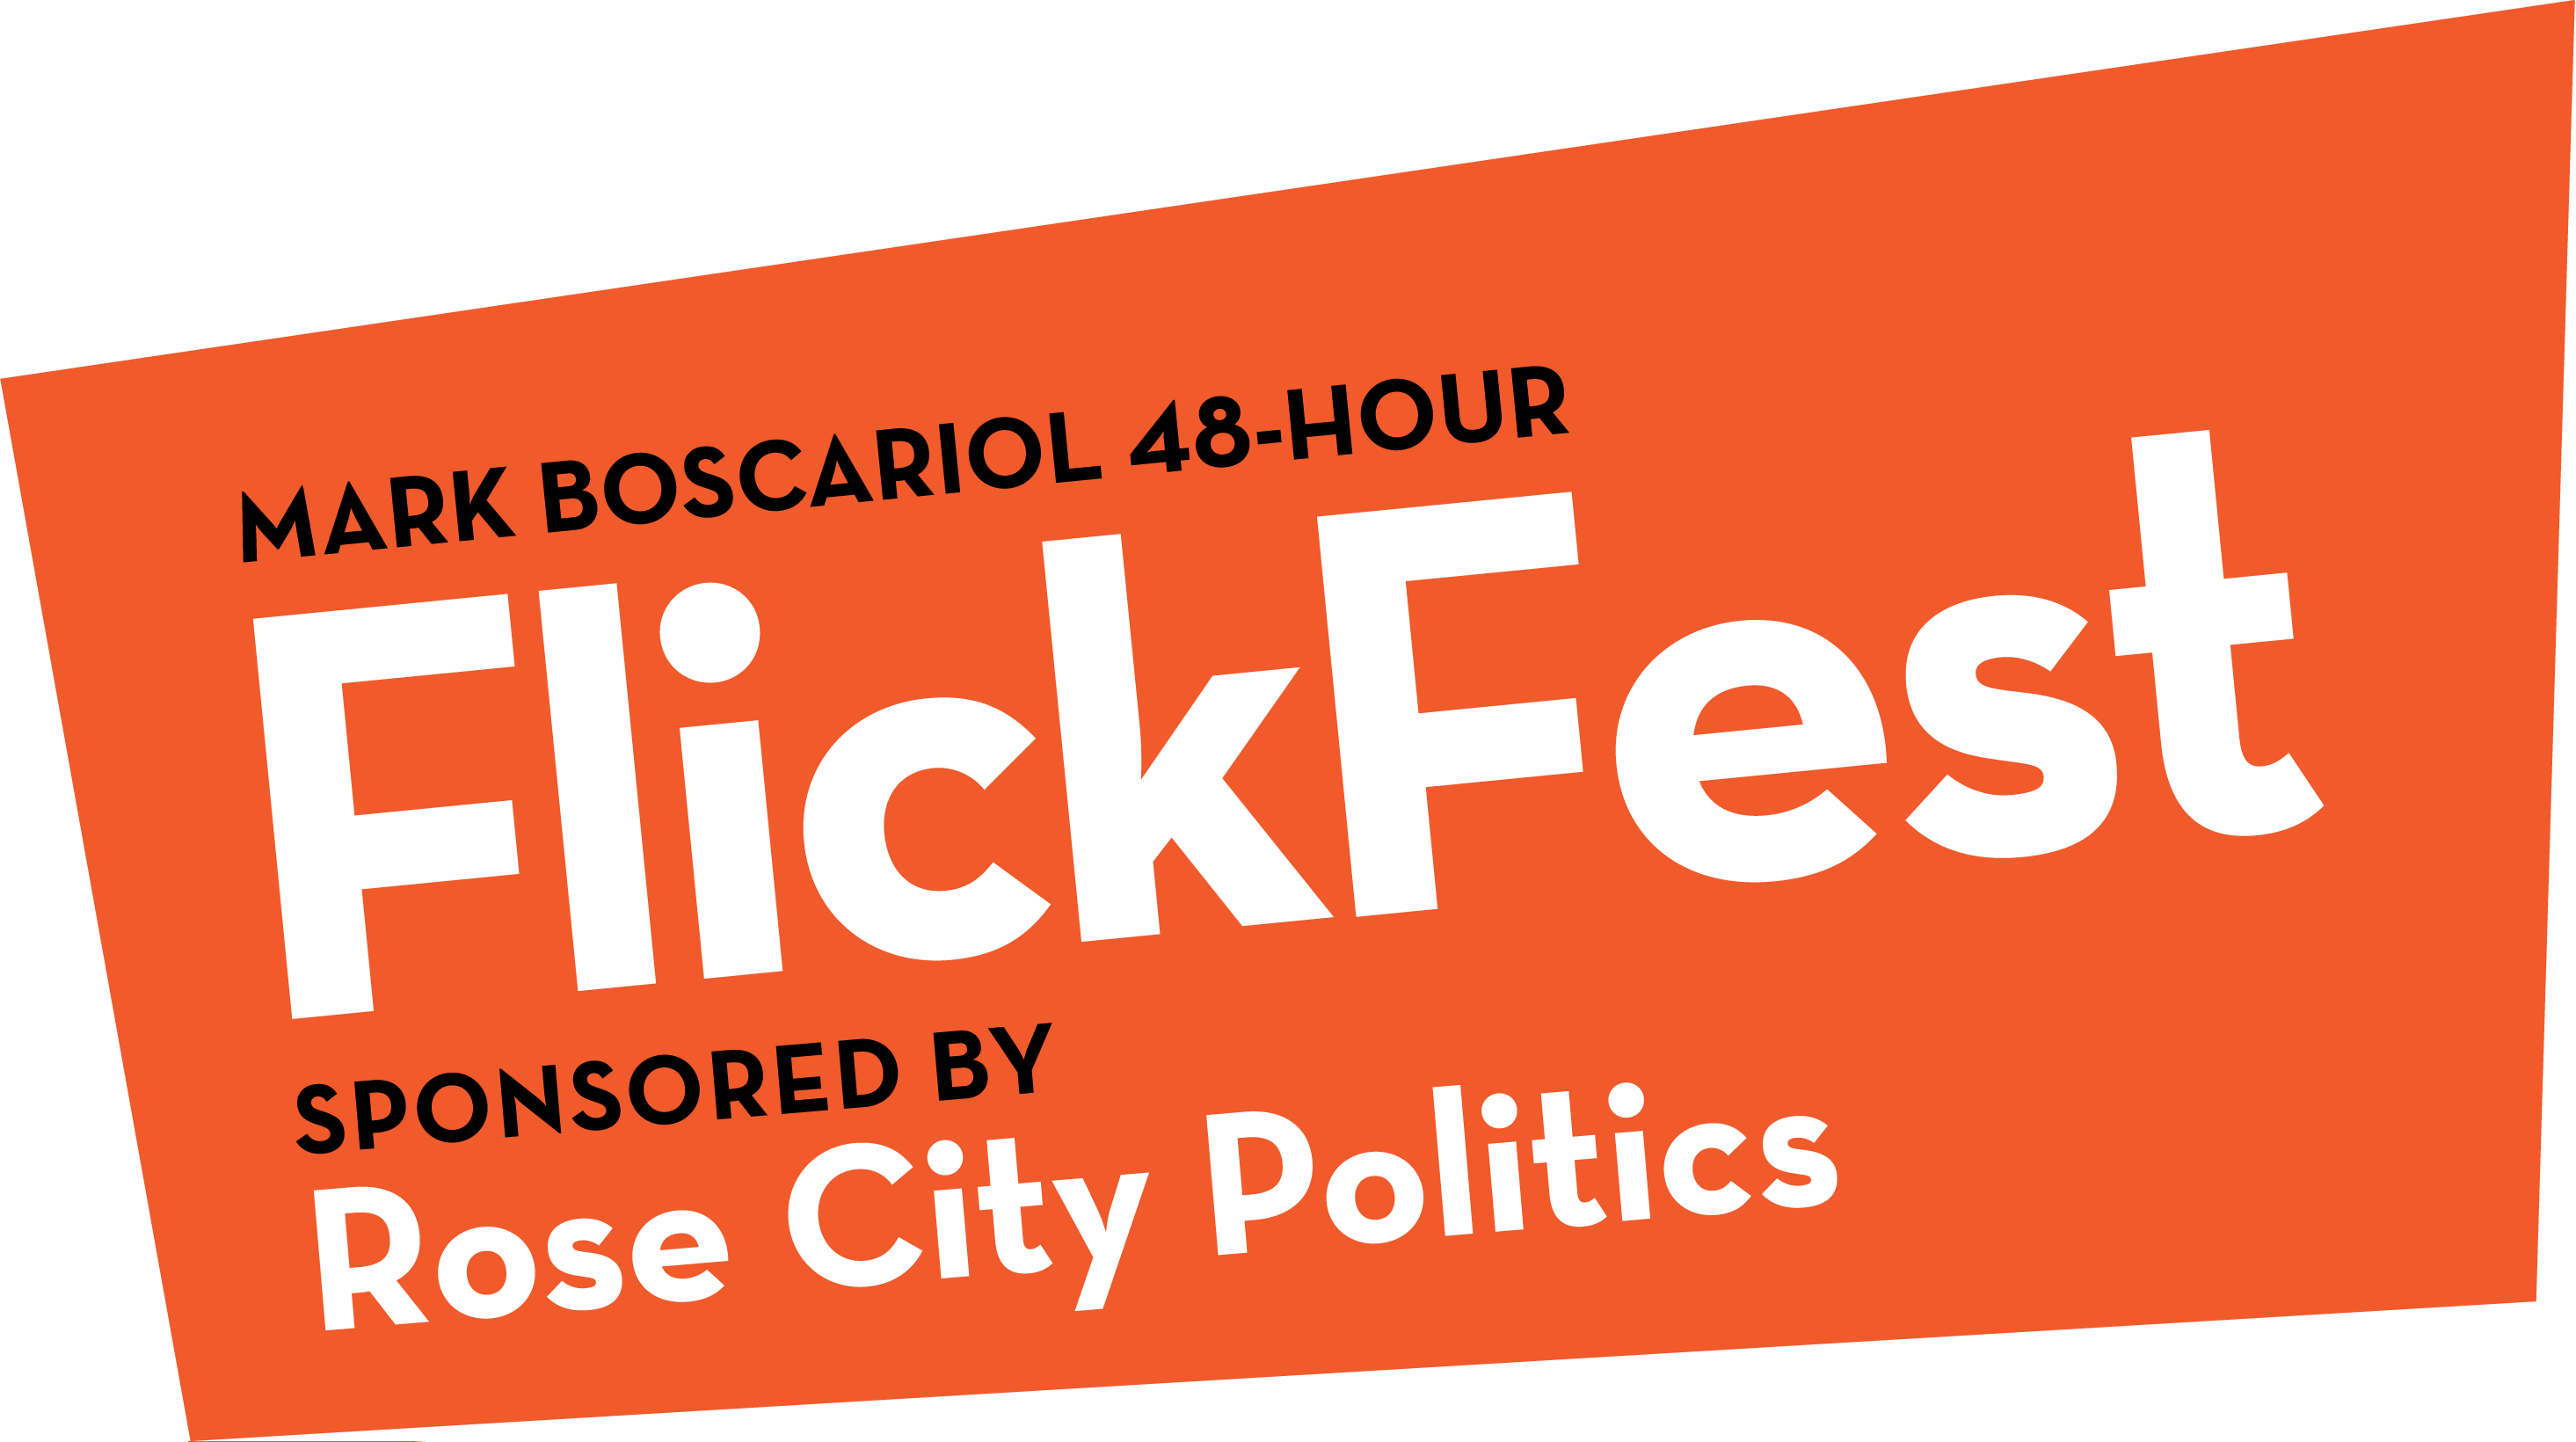 Mark Boscariol 48-Hour Flickfest